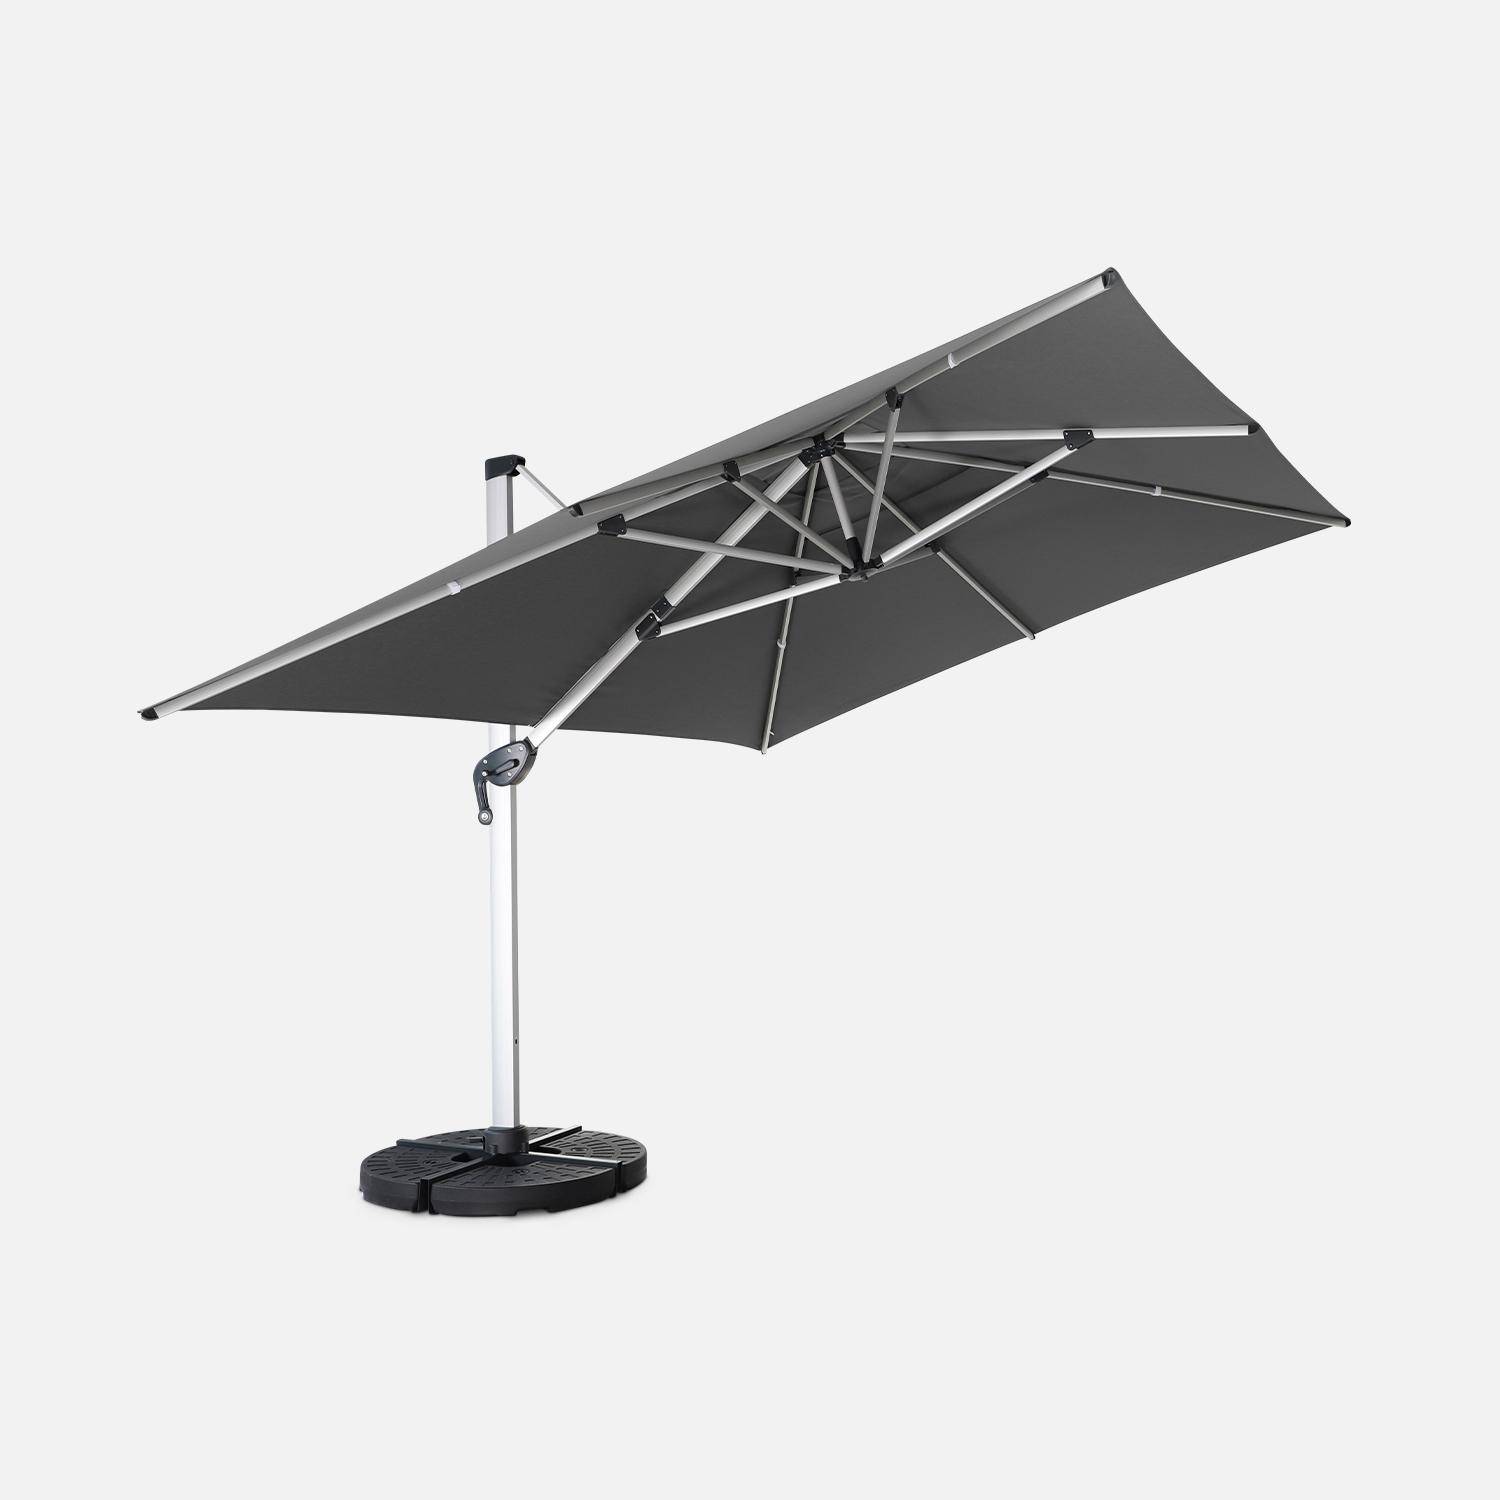 Topkwaliteit parasol, 3x4m, grijs polyester doek, geanodiseerd aluminium frame, hoes inbegrepen,sweeek,Photo3